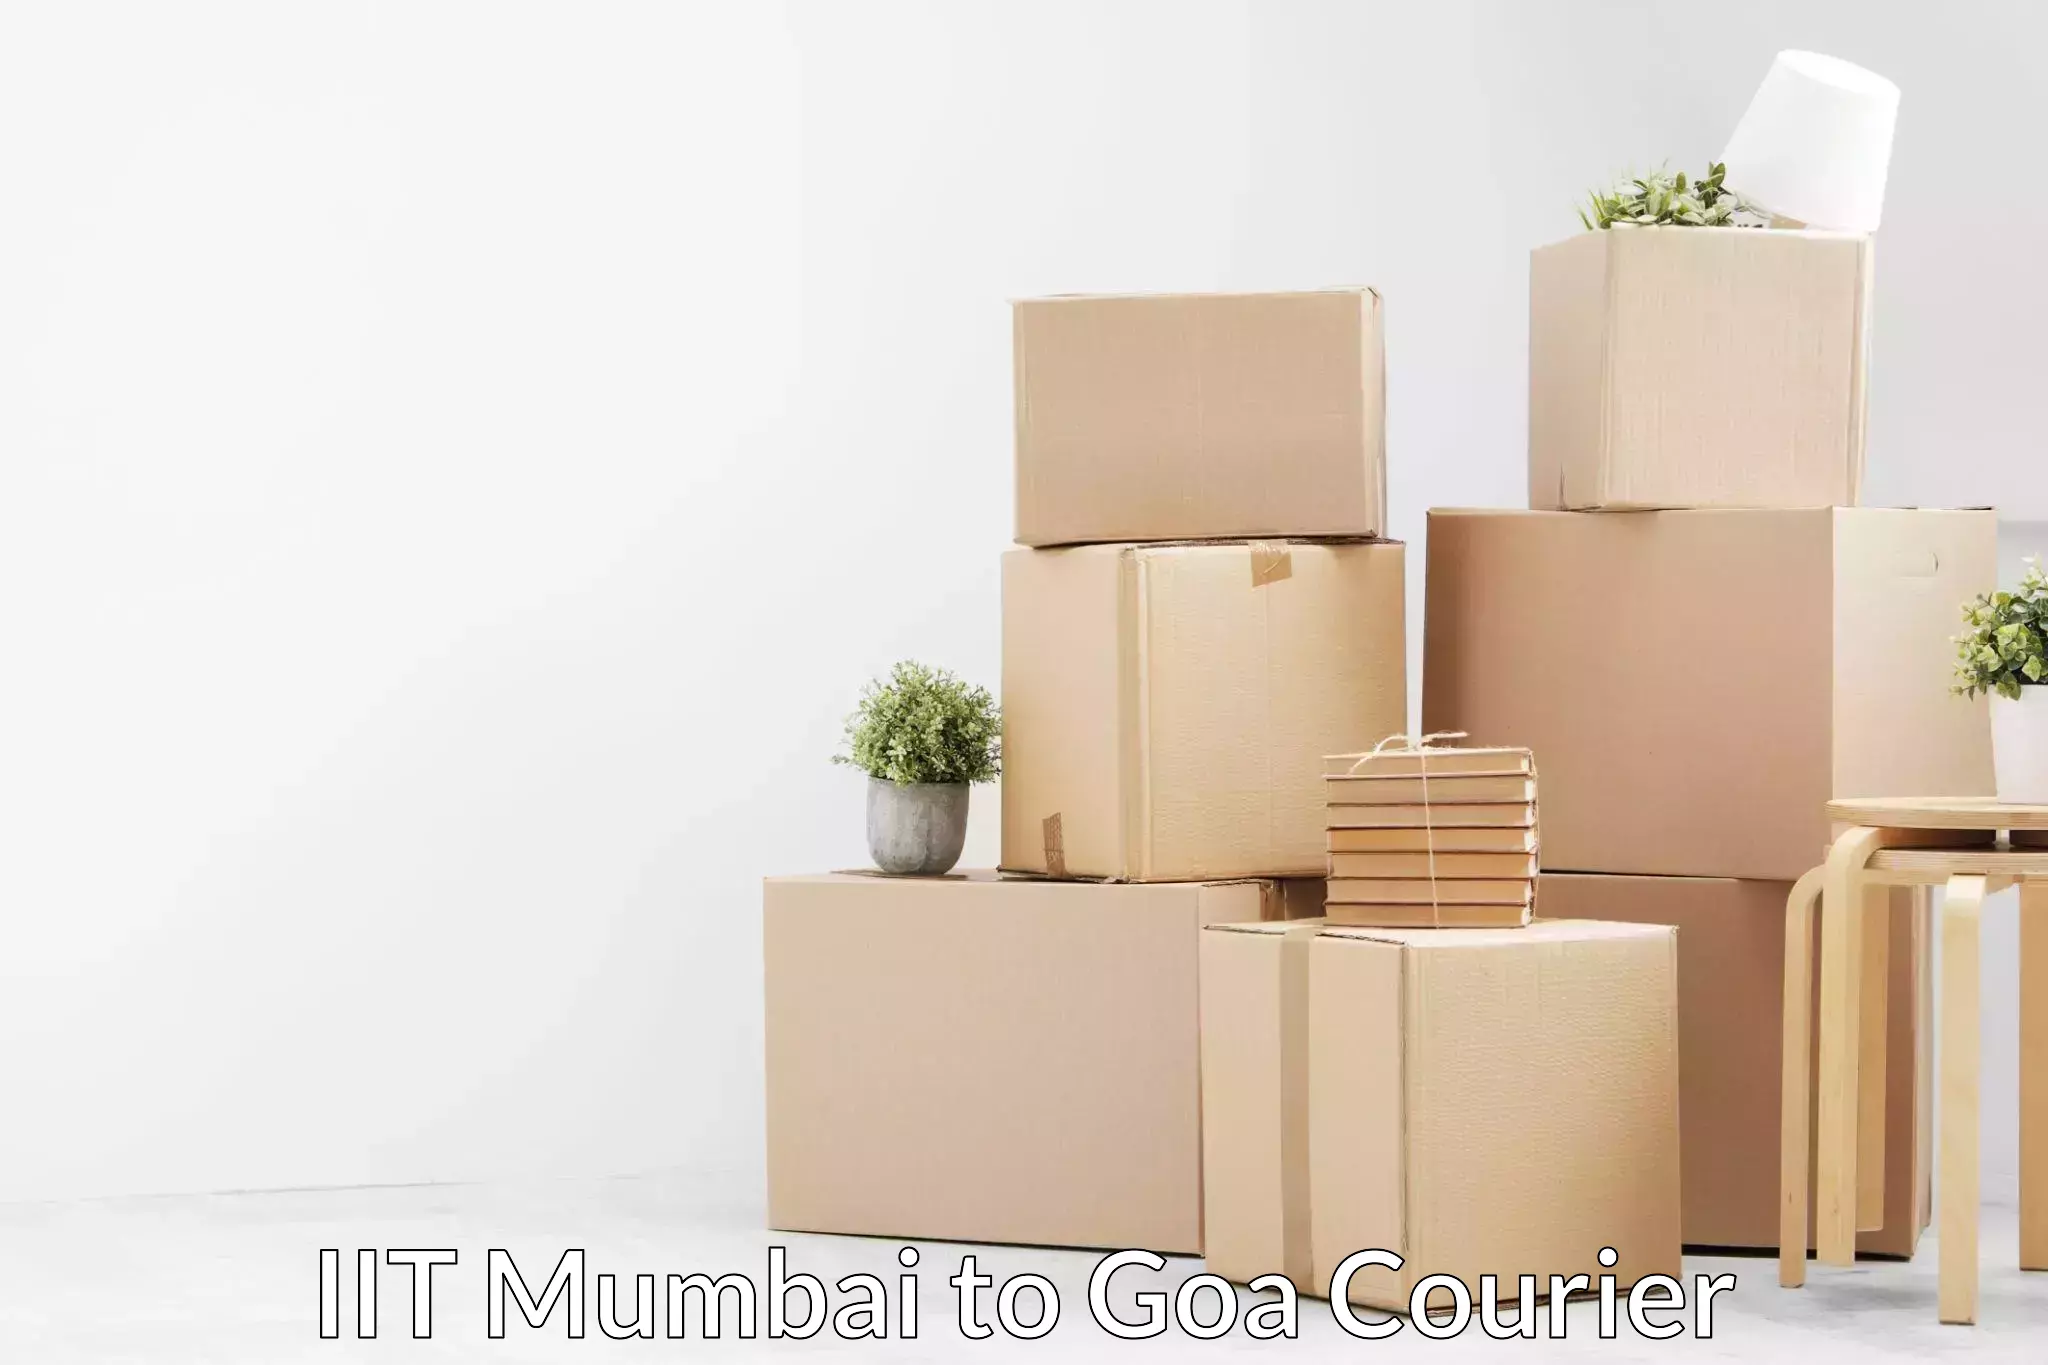 Comprehensive home relocation IIT Mumbai to Goa